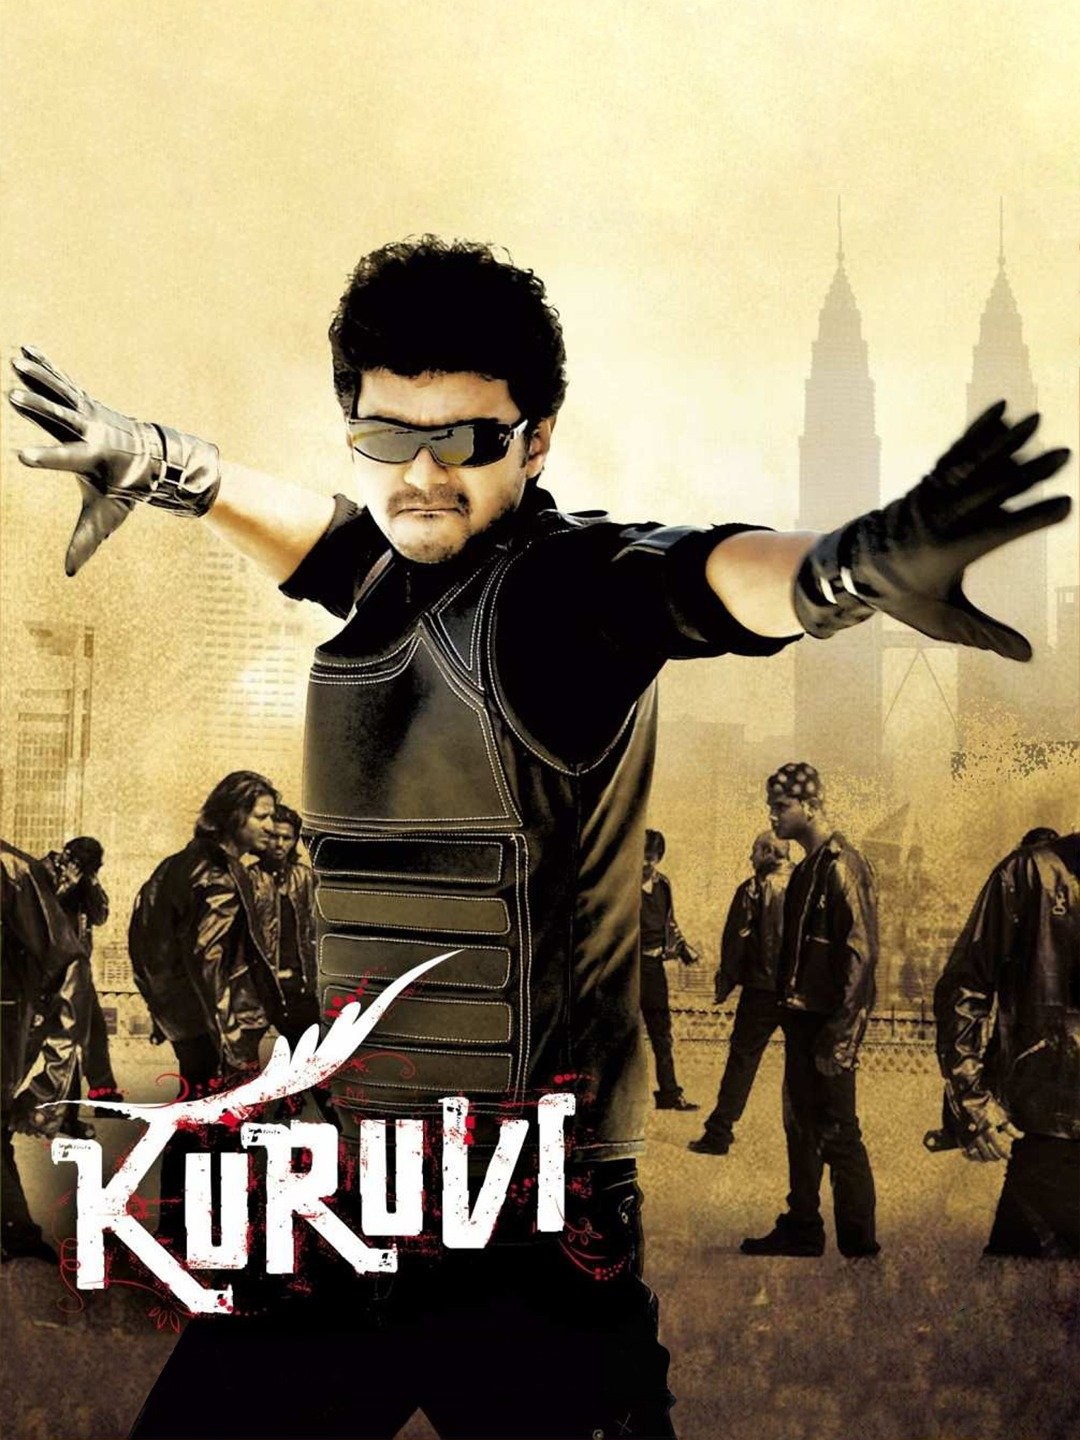 Kuruvi on Moviebuff.com